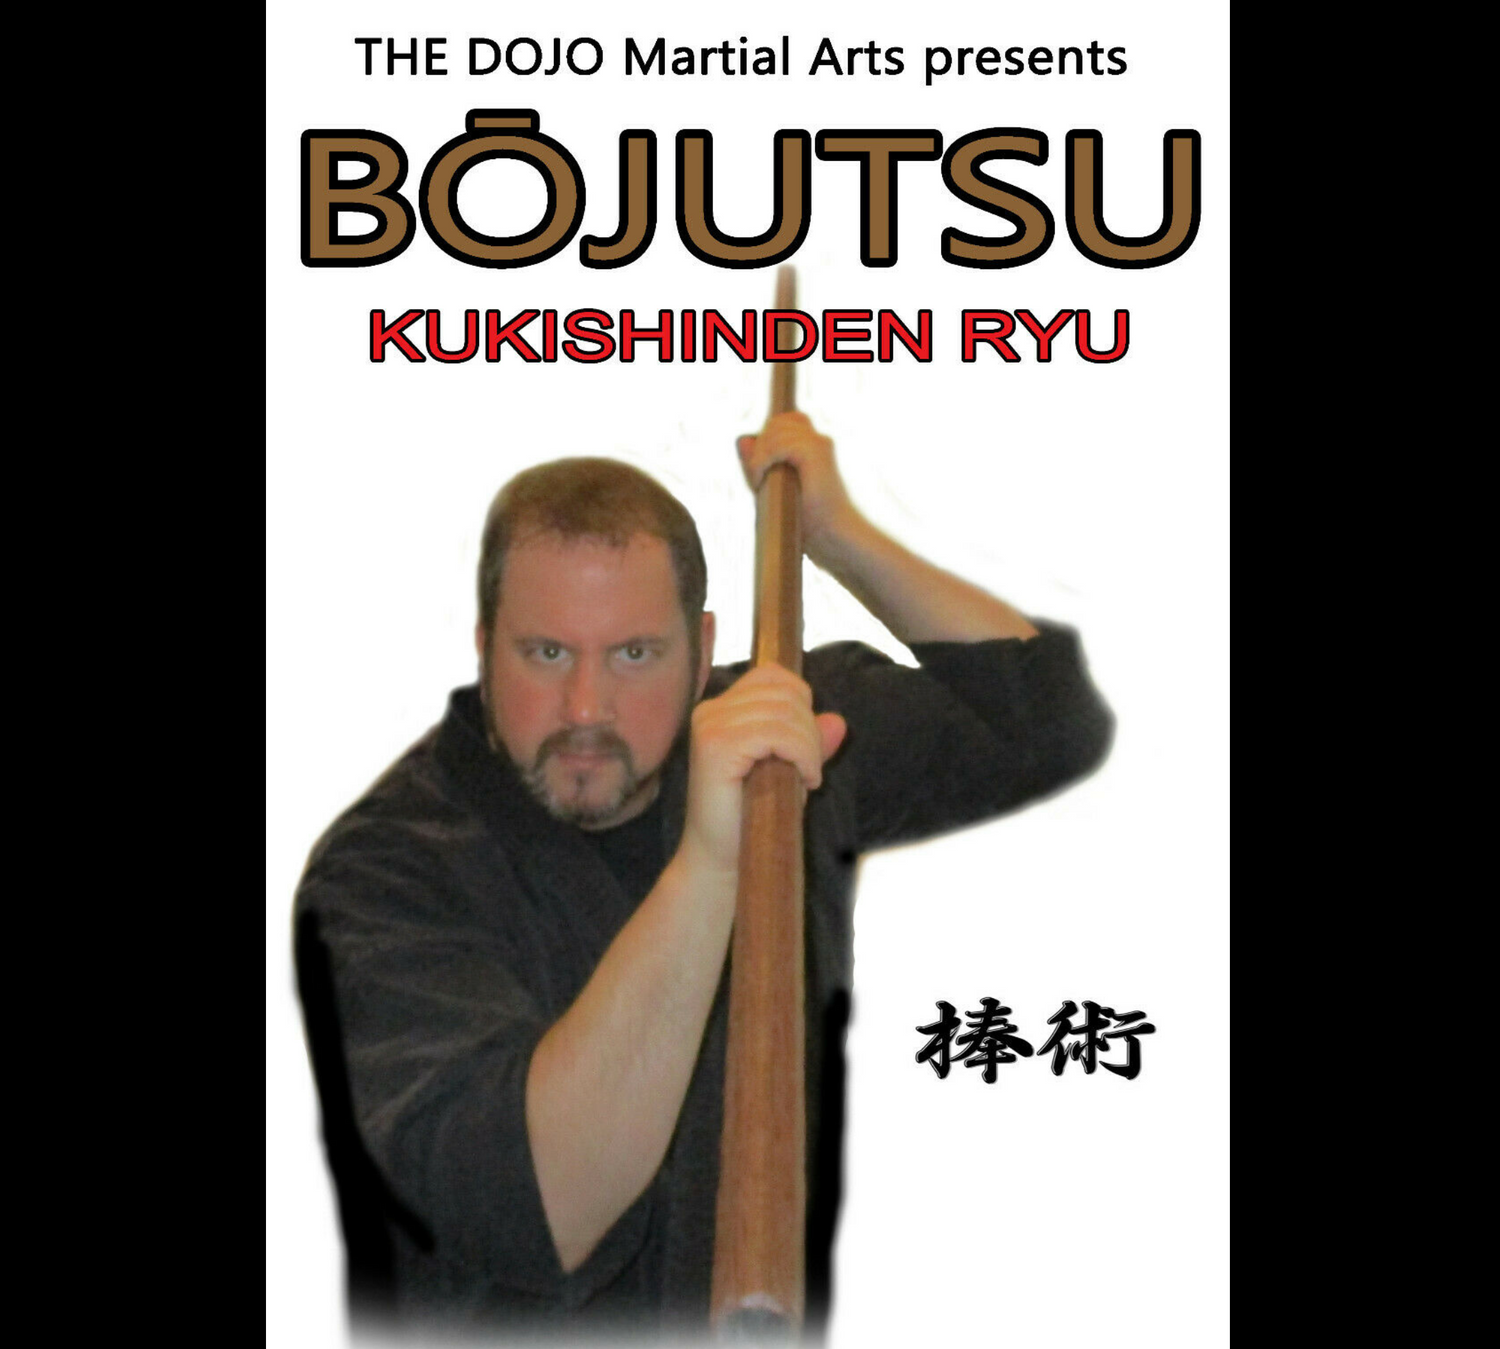 Kukishinden Ryu Bojutsu de Todd Norcross (bajo demanda)